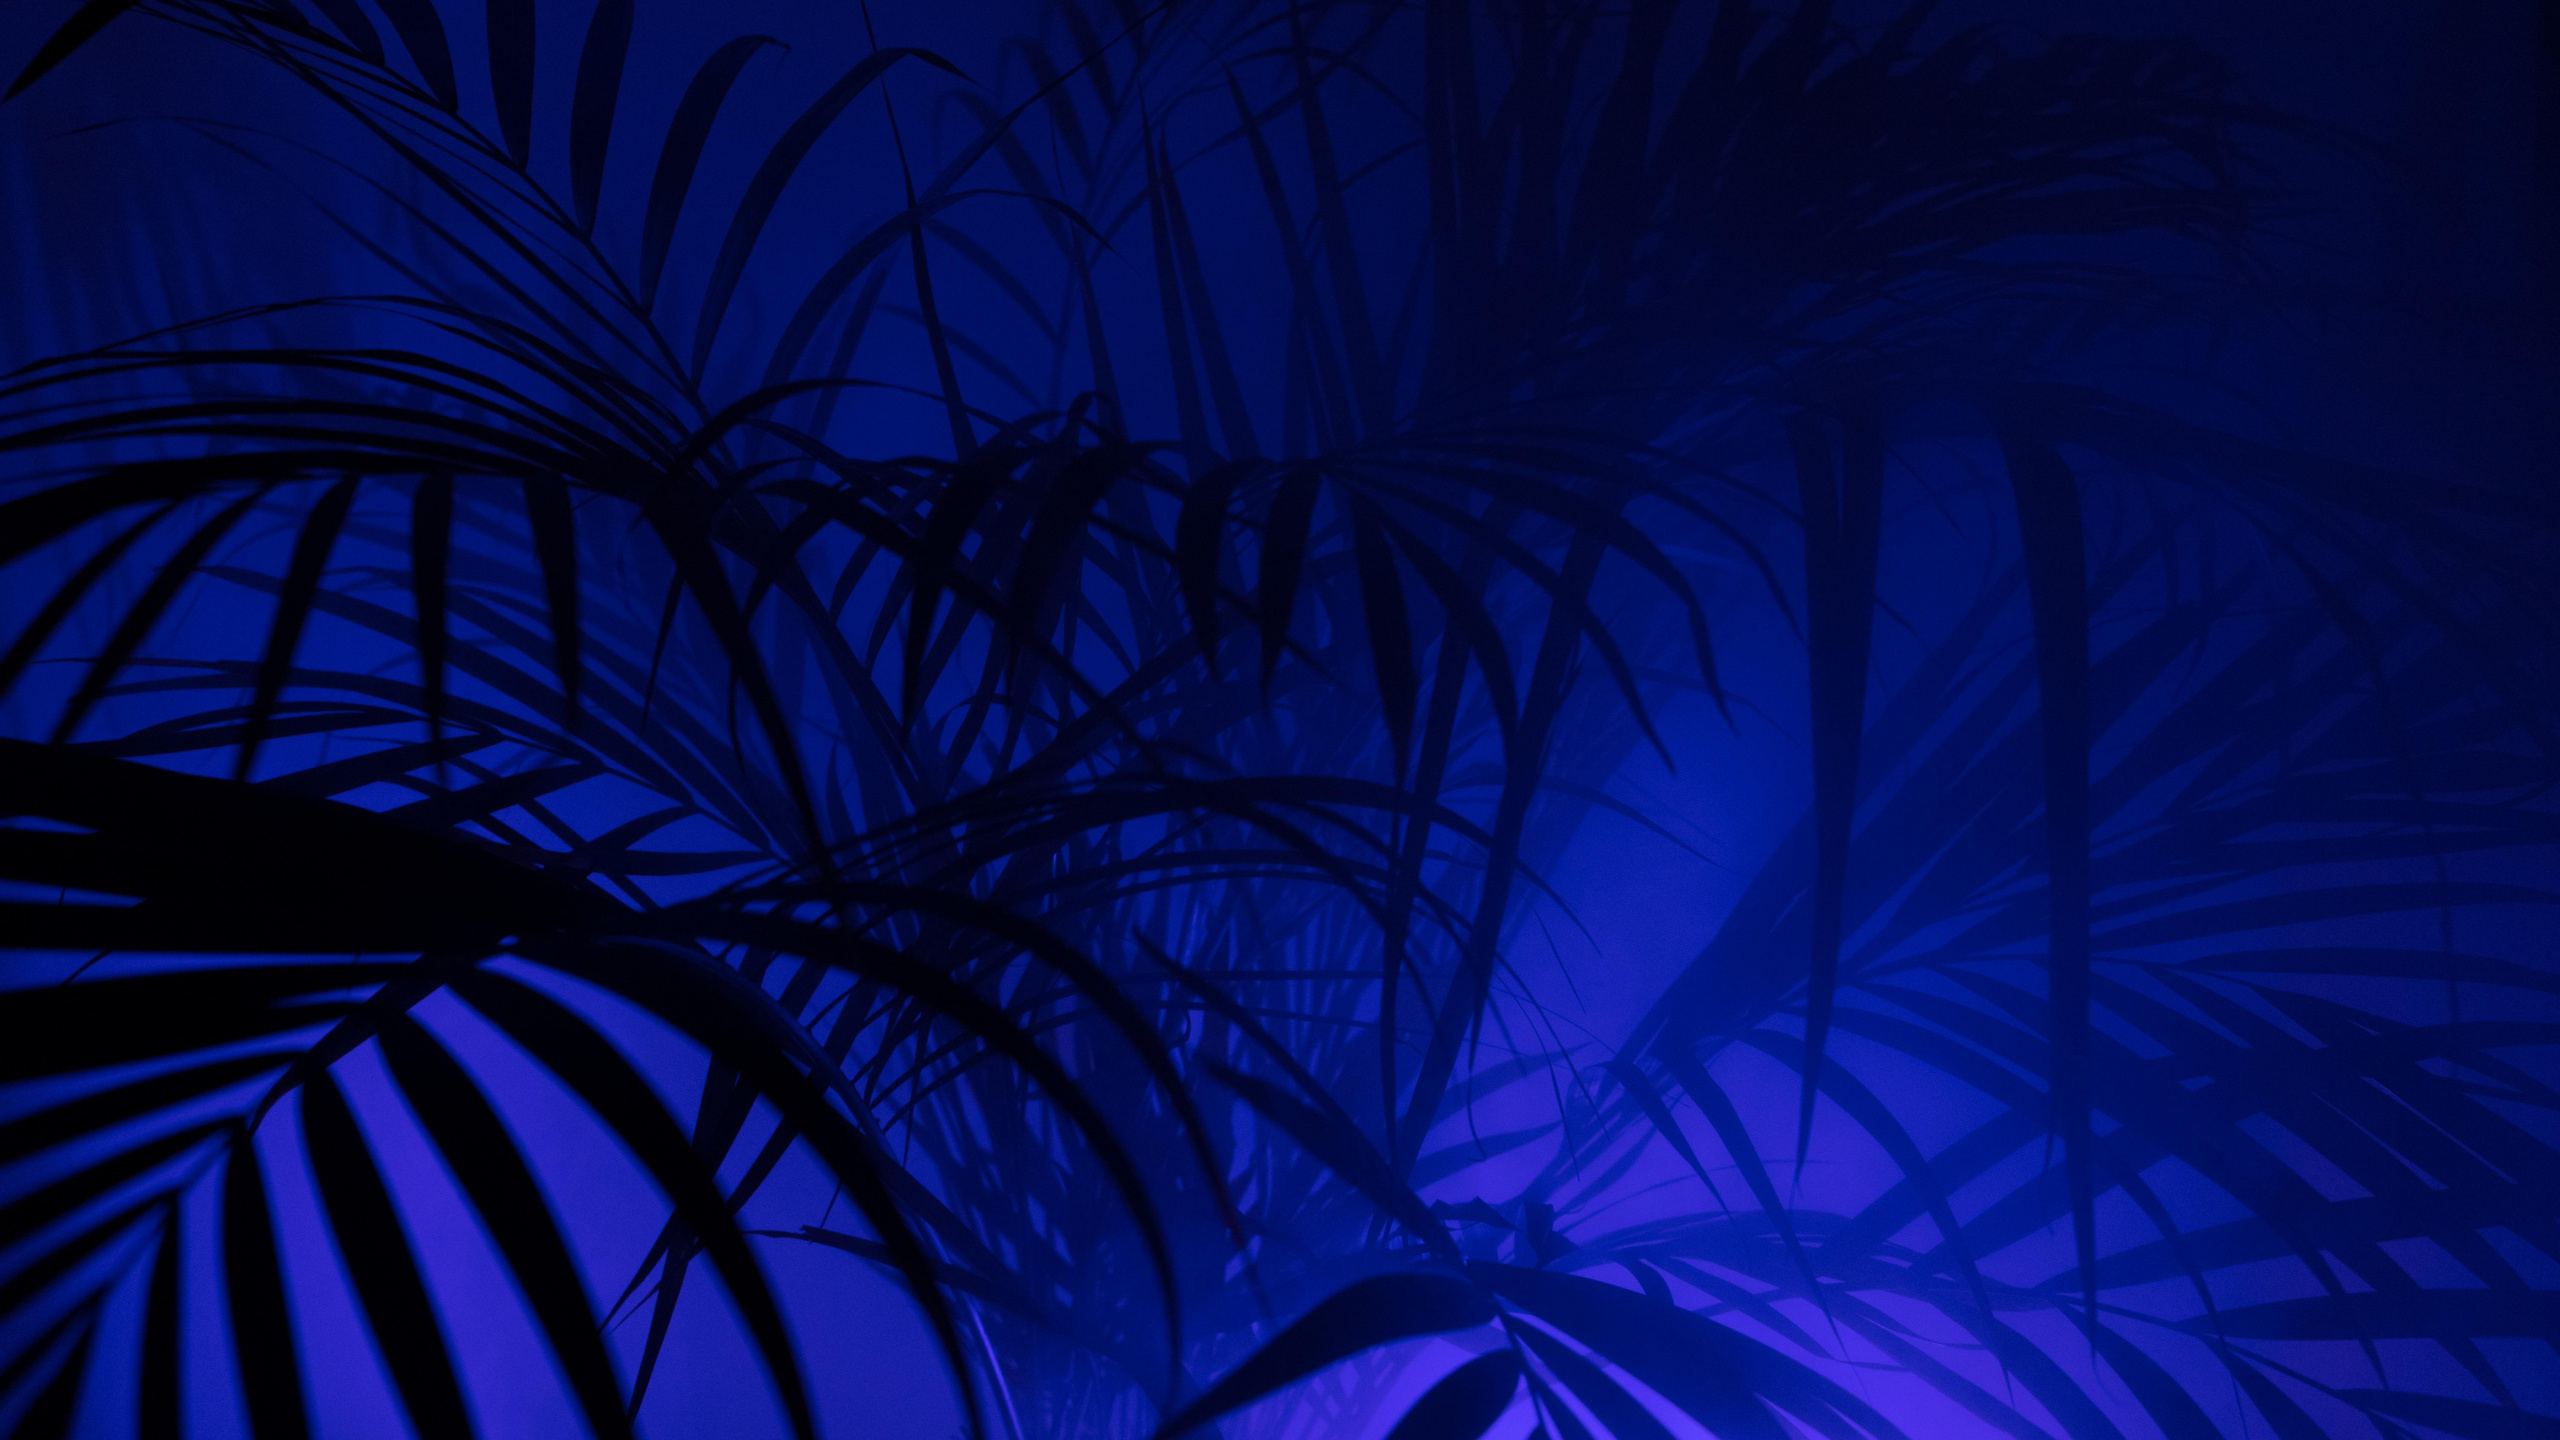 Grüne Pflanze in Blauem Hintergrund. Wallpaper in 2560x1440 Resolution